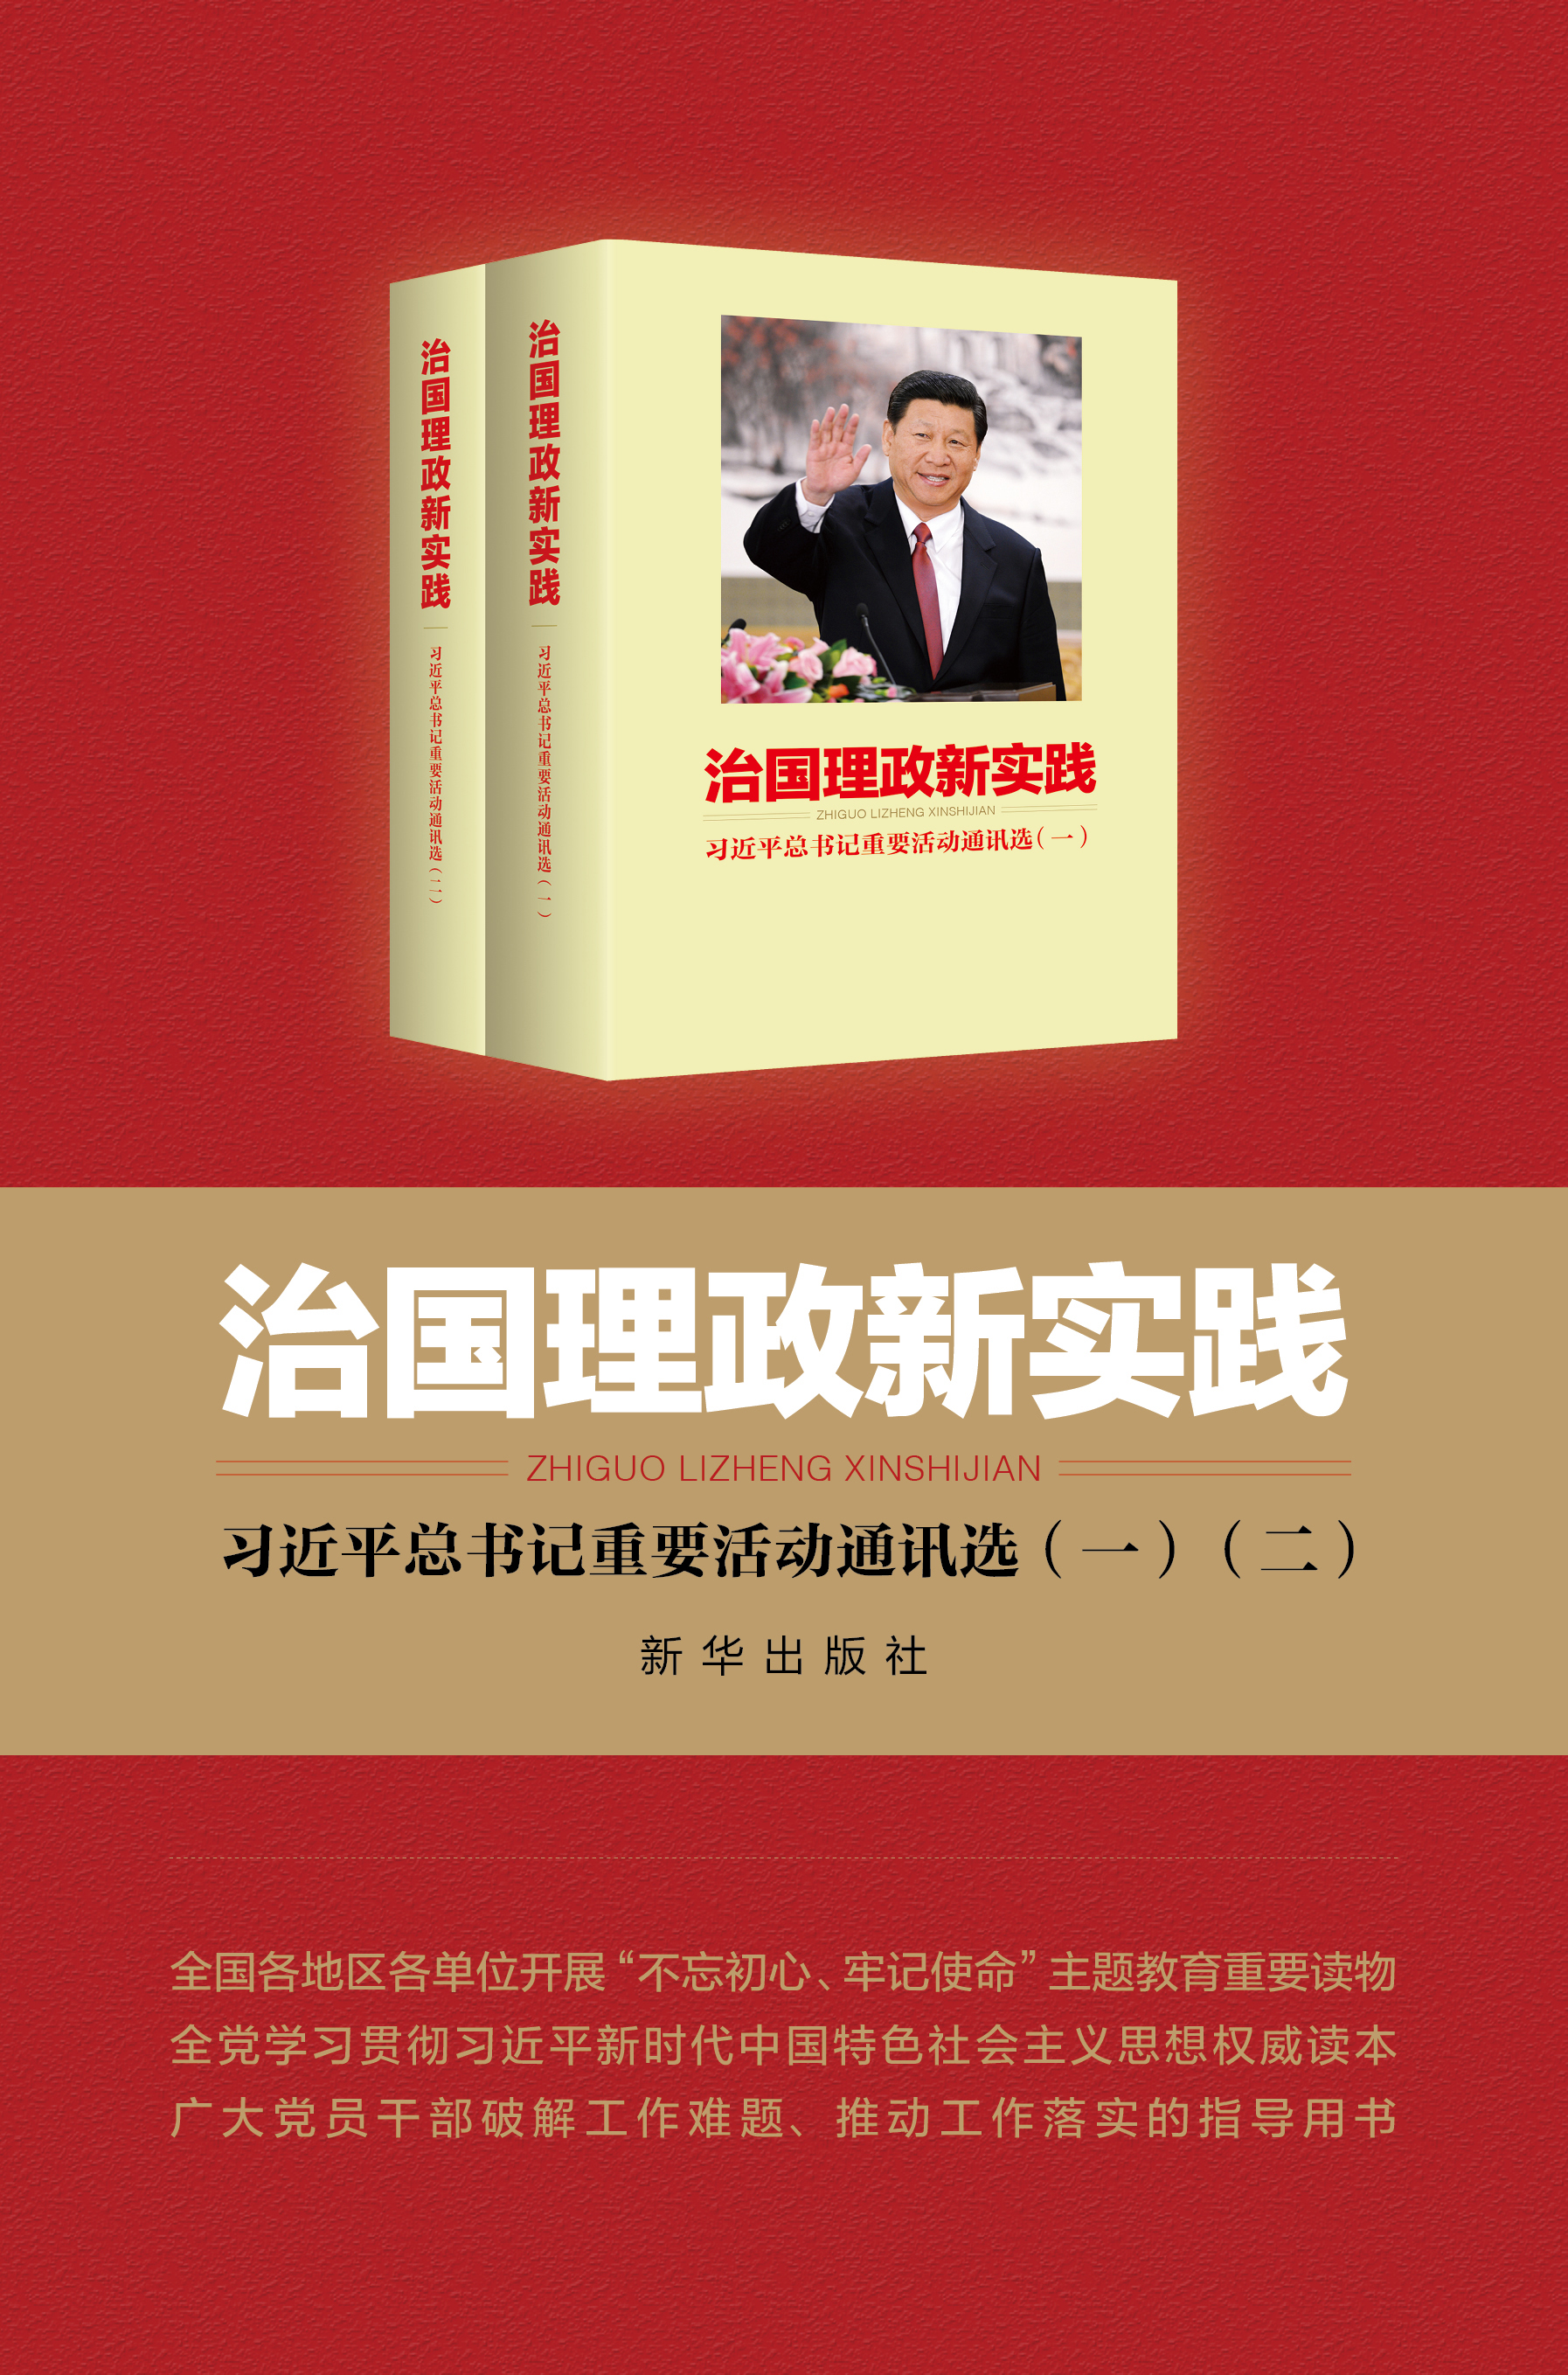 《治国理政新实践——习近平总书记重要活动通讯选》出版发行